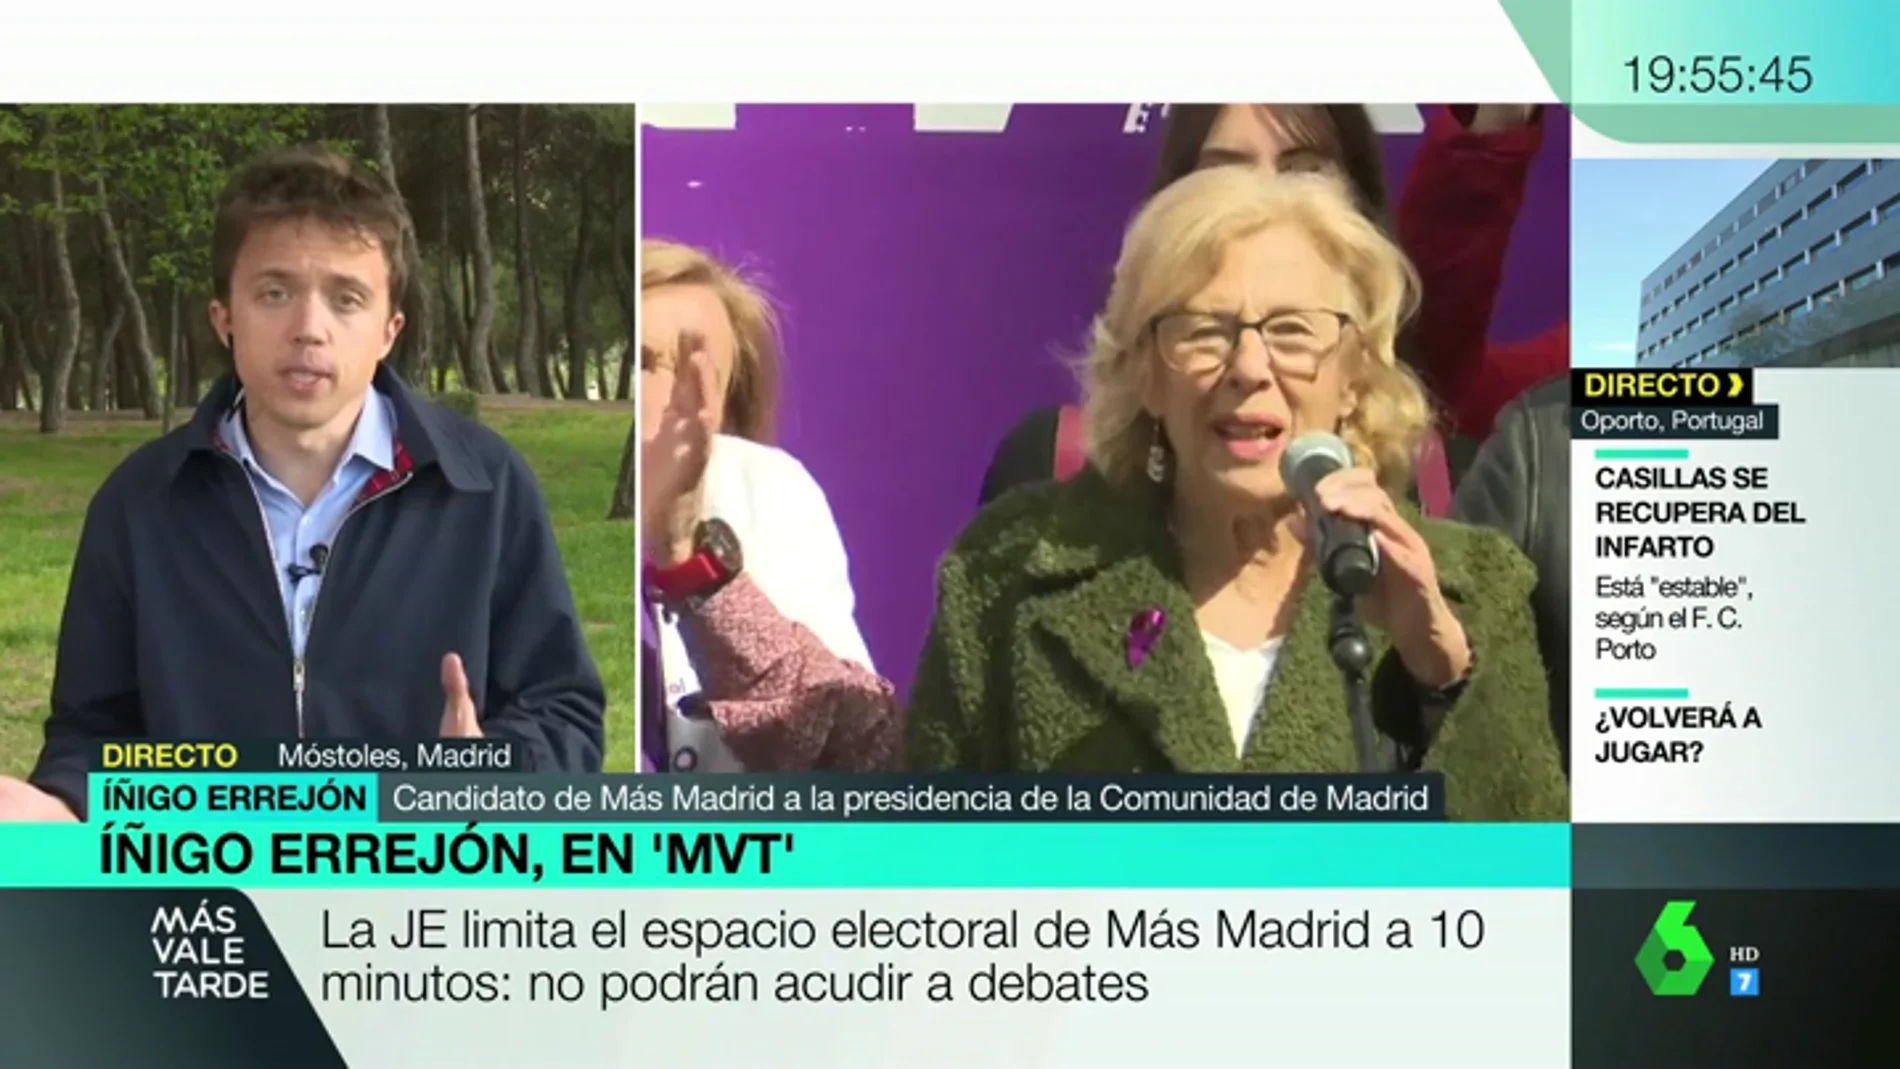 Iñigo Errejón califica de "sinsentido" la decisión de la JEC de no permitir ni a él ni a Manuela Carmena participar en los debates del 26M